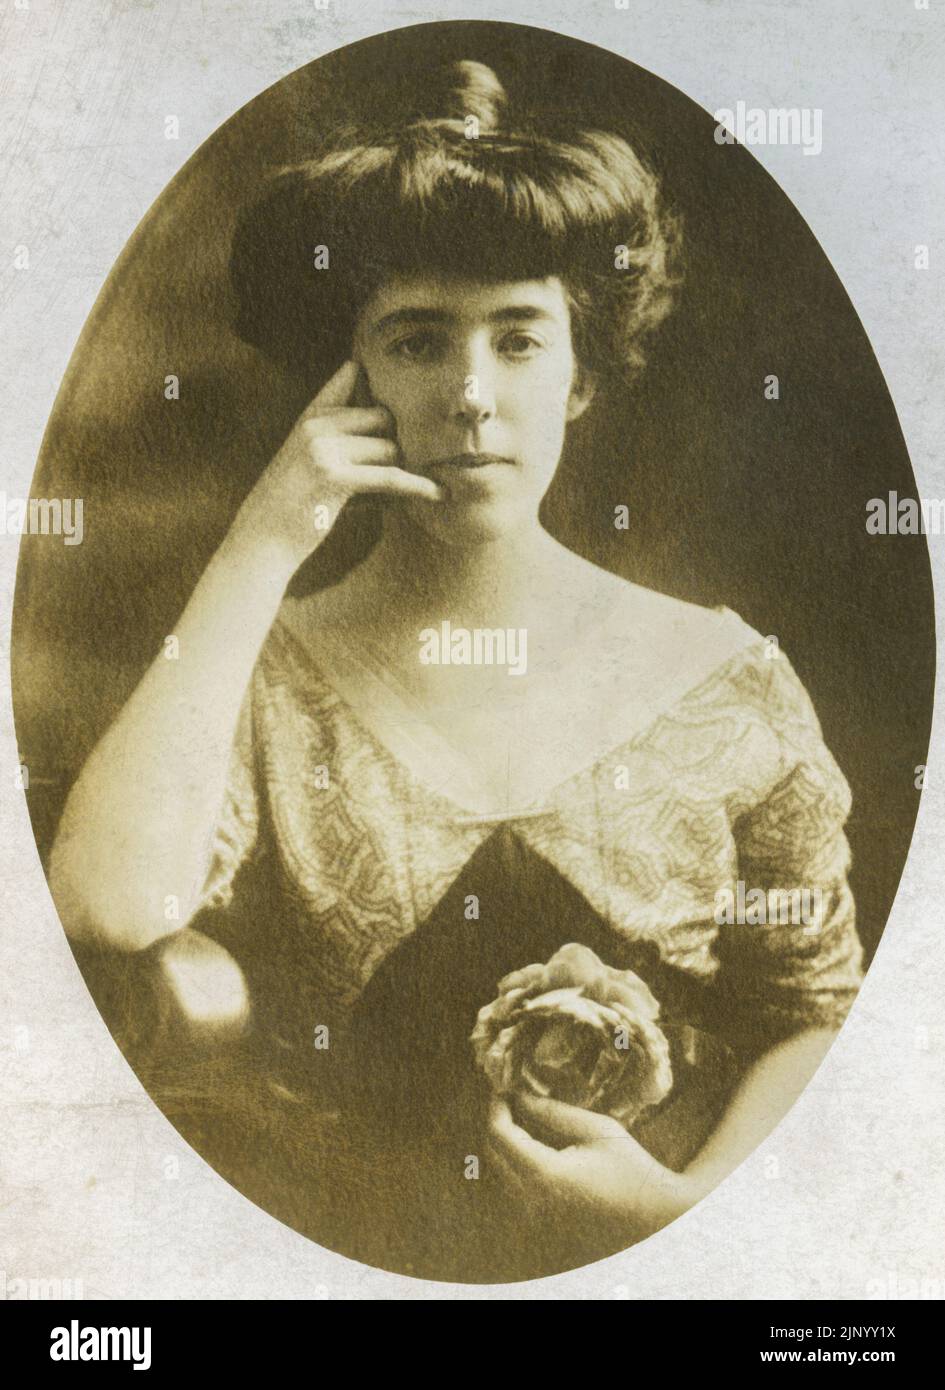 Photographie studio vintage de jeune femme prise au début du 20th siècle elle fait un geste de main qui ressemble à appelez-moi ce portrait de gros plan est vers 1900 Banque D'Images